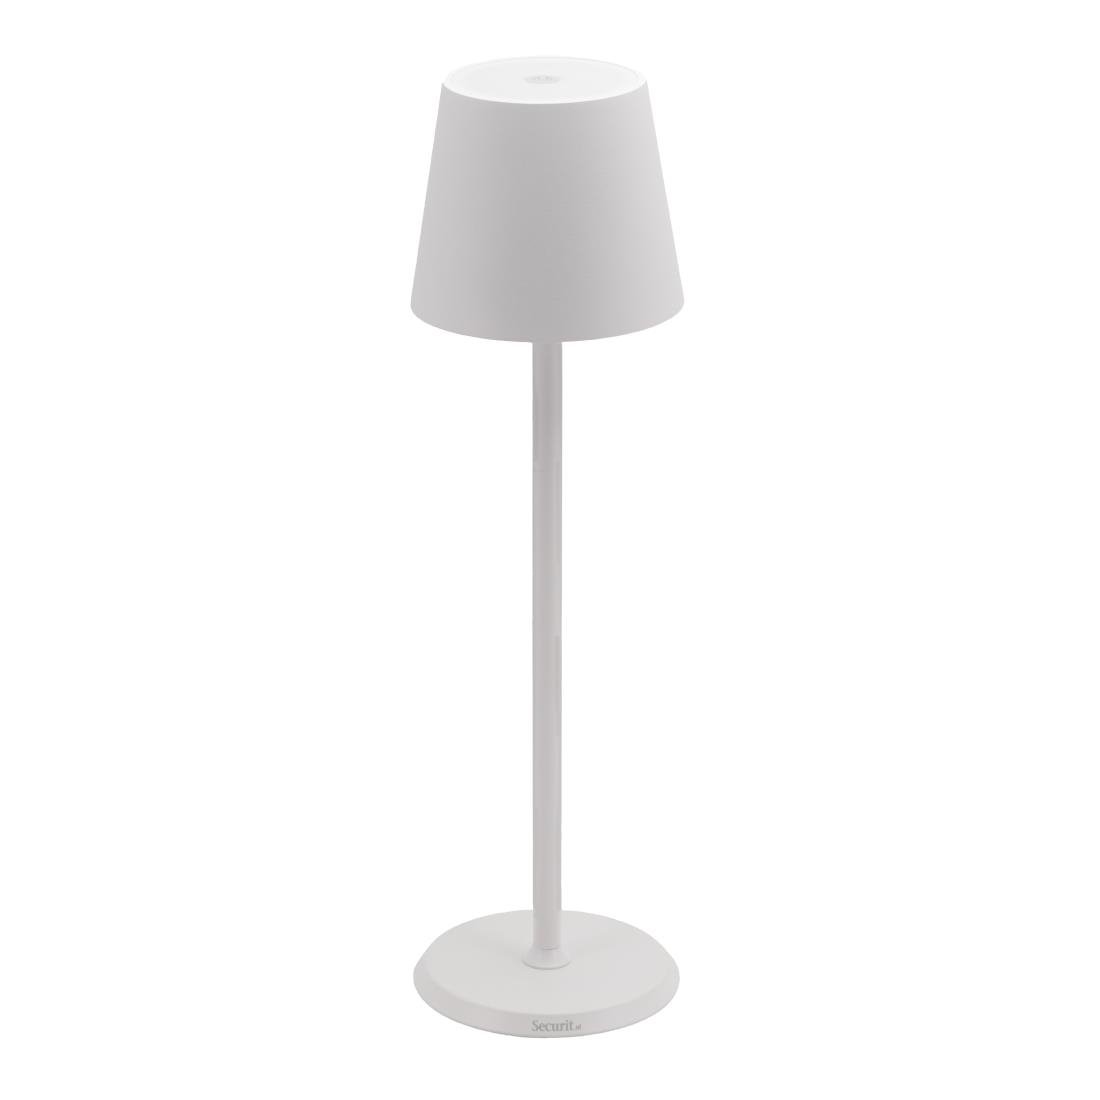 Lampe de table LED blanche à intensité variable Securit Feline avec câble de chargement magnétique